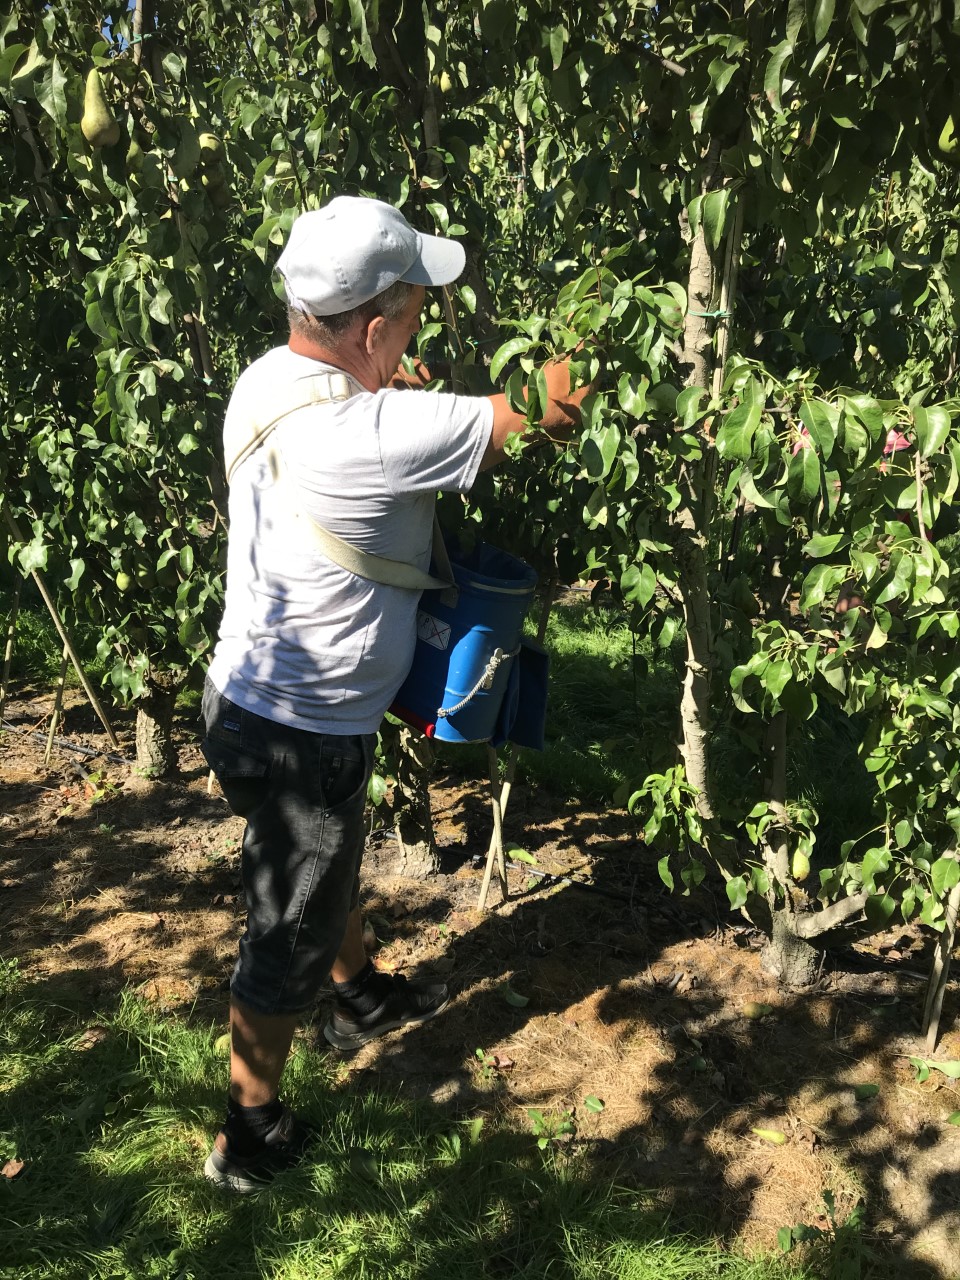 Seizoensarbeiders plukken fruit Coronaveilig